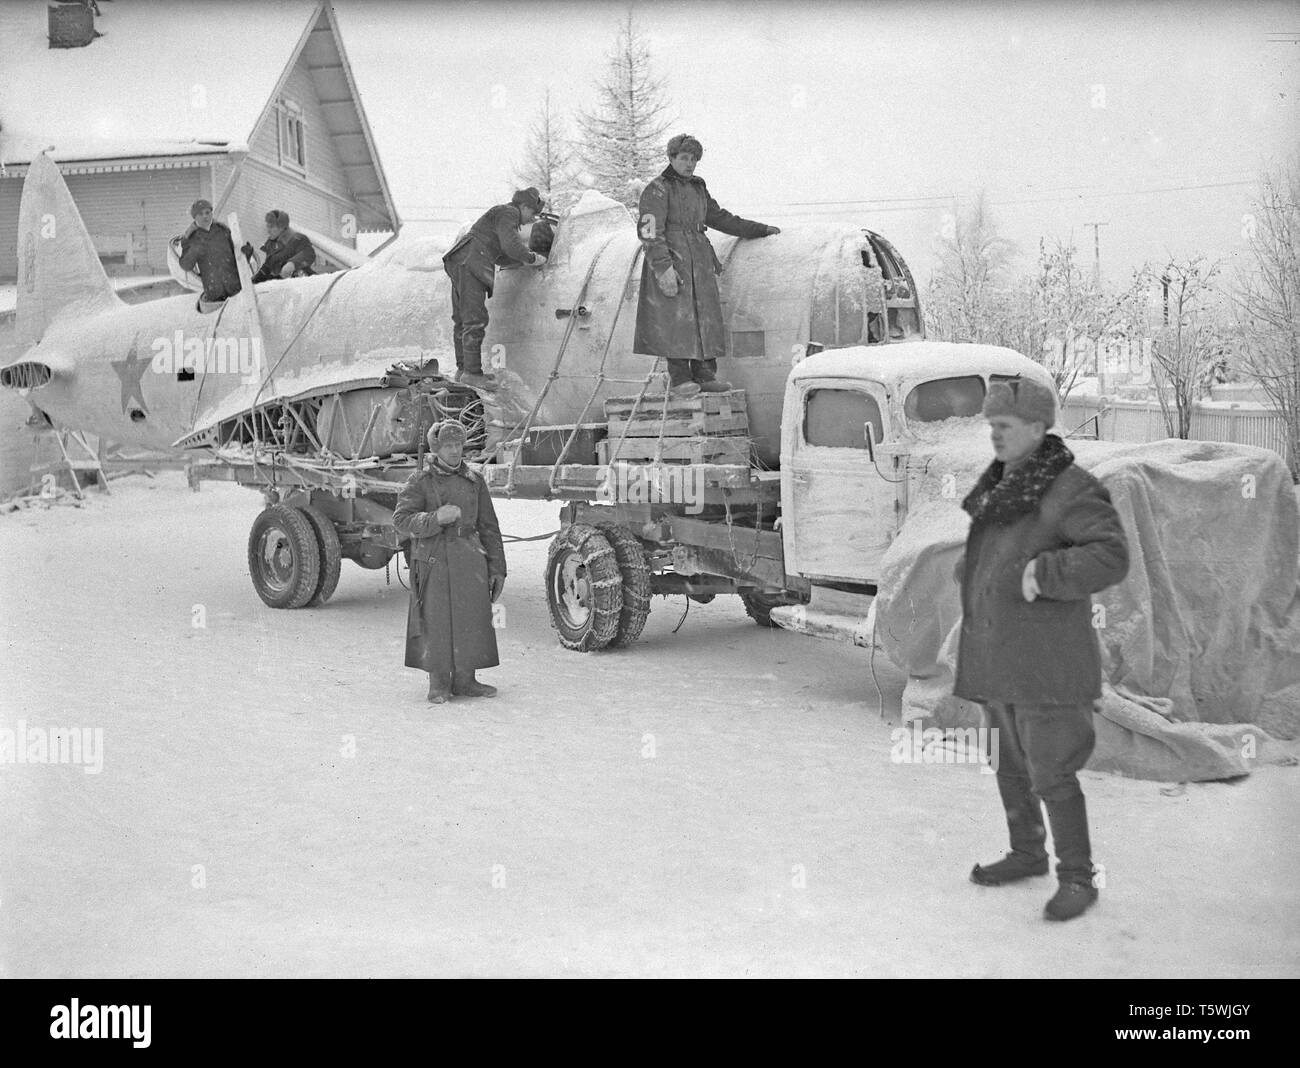 La guerre d'hiver. Un conflit militaire entre l'Union soviétique et la Finlande. Il a commencé par une invasion soviétique en novembre 1939 lors de l'infantery soviétique ont franchi la frontière sur l'isthme de Carélie. Environ 9500 soldats volontaires suédois ont participé à la guerre. Ici, à Rovaniemi, Finlande du Nord. L'unité appelée Laponie a arrêté le groupe des troupes soviétiques, bien qu'en infériorité numérique, à Salla et Petsamo. L'image montre des soldats finlandais loading partie d'un avion soviétique qui a été abattu. Janvier 1940. Kristoffersson Photo ref 99-3 Banque D'Images